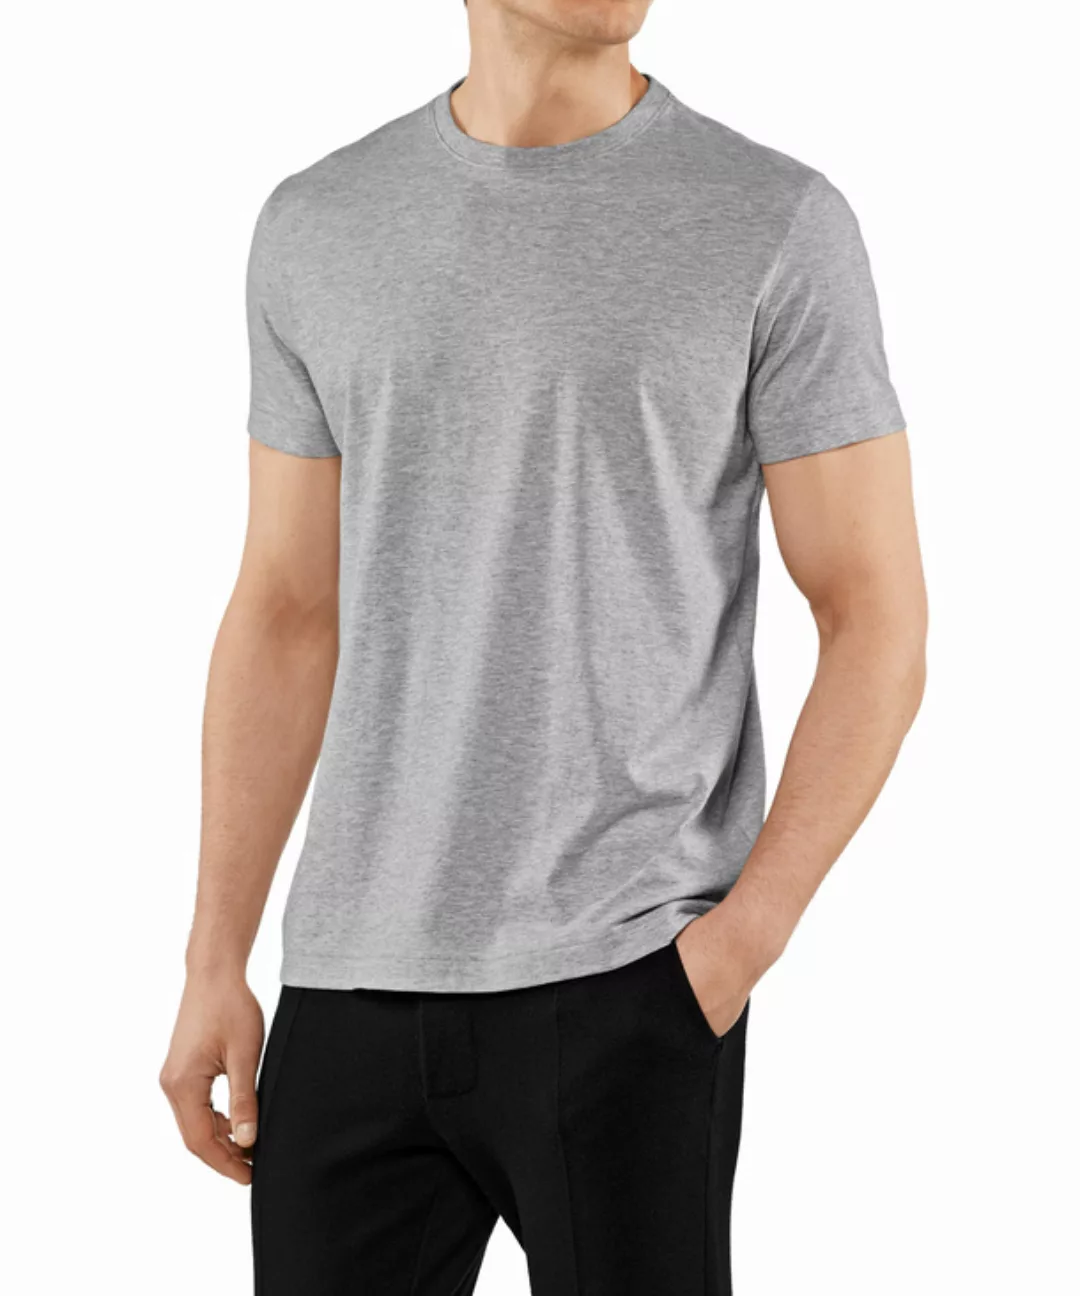 FALKE Herren T-Shirt Rundhals, Polo, M, Grau, Uni,Struktur, Baumwolle, 6210 günstig online kaufen